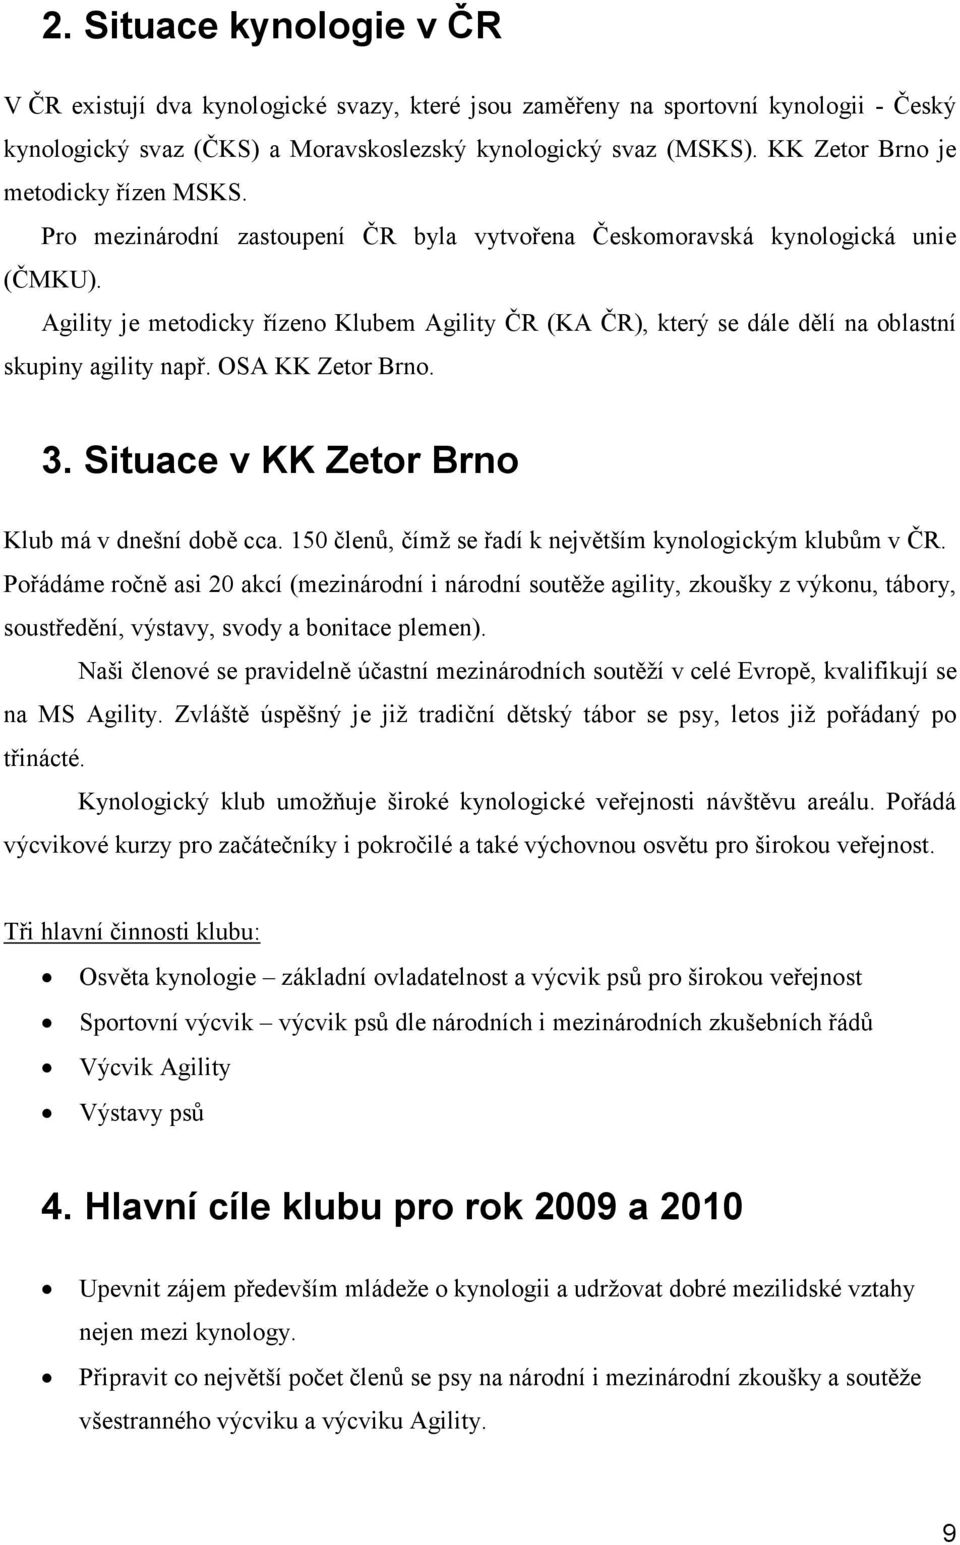 Agility je metodicky řízeno Klubem Agility ČR (KA ČR), který se dále dělí na oblastní skupiny agility např. OSA KK Zetor Brno. 3. Situace v KK Zetor Brno Klub má v dnešní době cca.